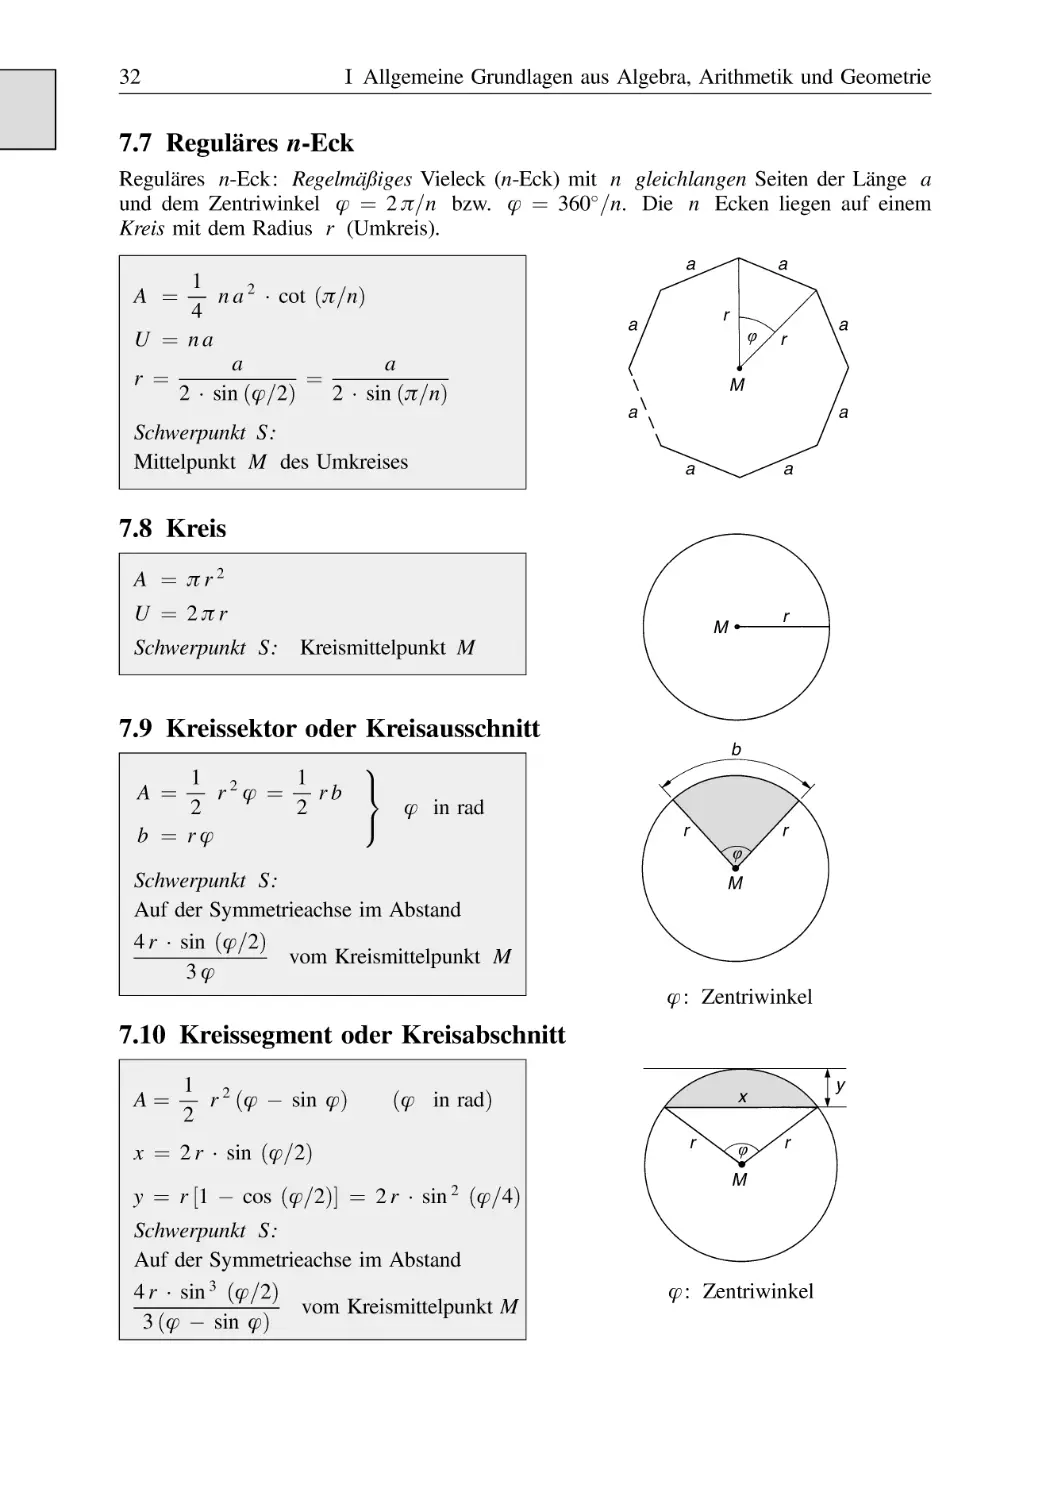 7.7 Reguläres n-Eck
7.8 Kreis
7.9 Kreissektor oder Kreisausschnitt
7.10 Kreissegment oder Kreisabschnitt